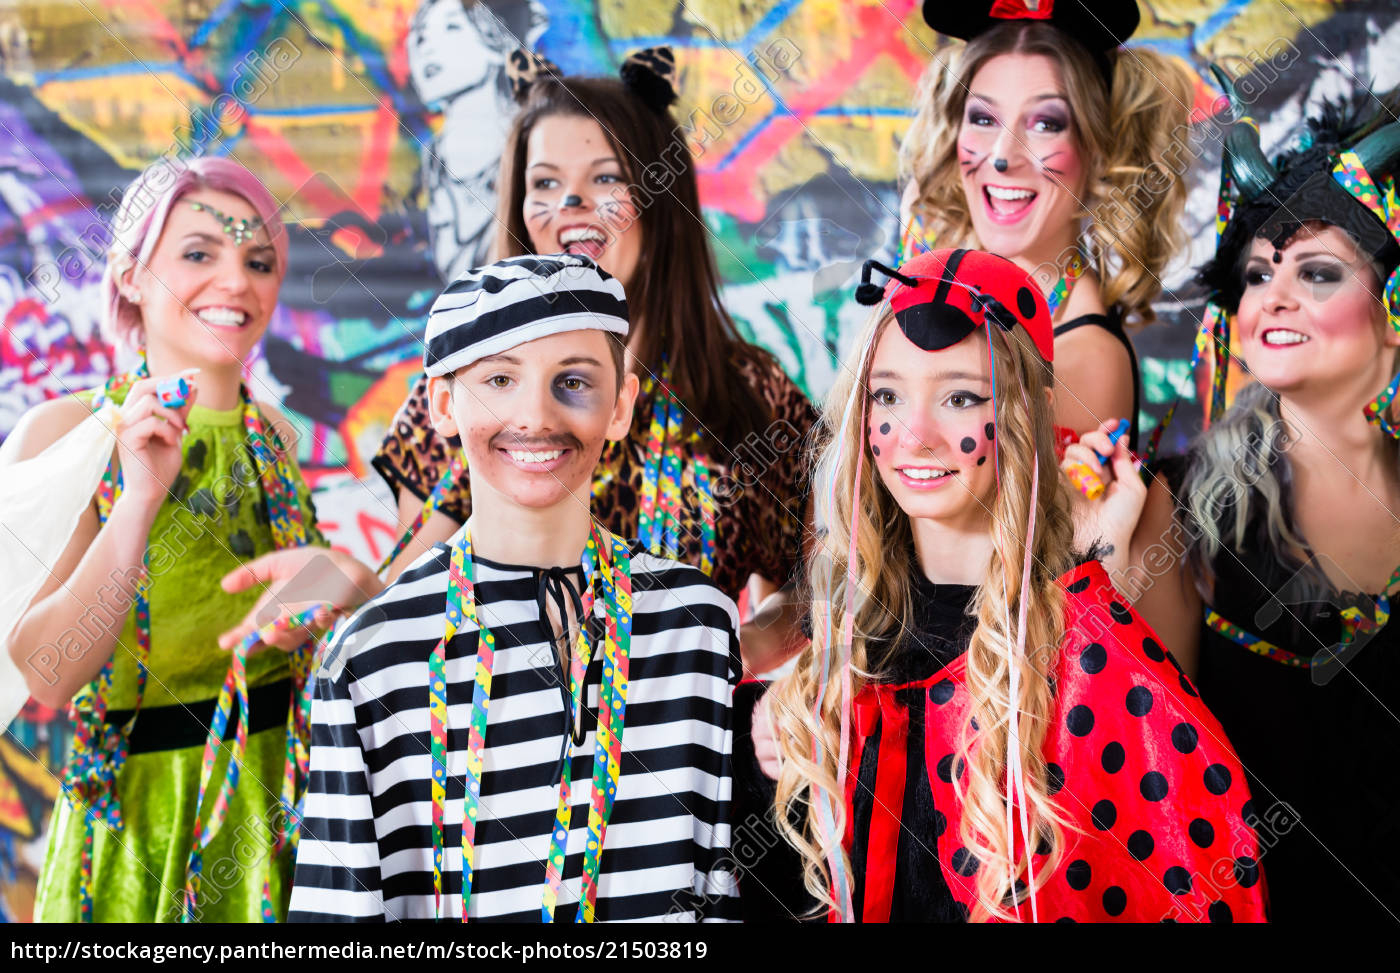 Lizenzfreies Bild 21503819 - Junge Frauen Feiern Deutschen Fasching  Karneval An Rose Montag über Fasching Feiern